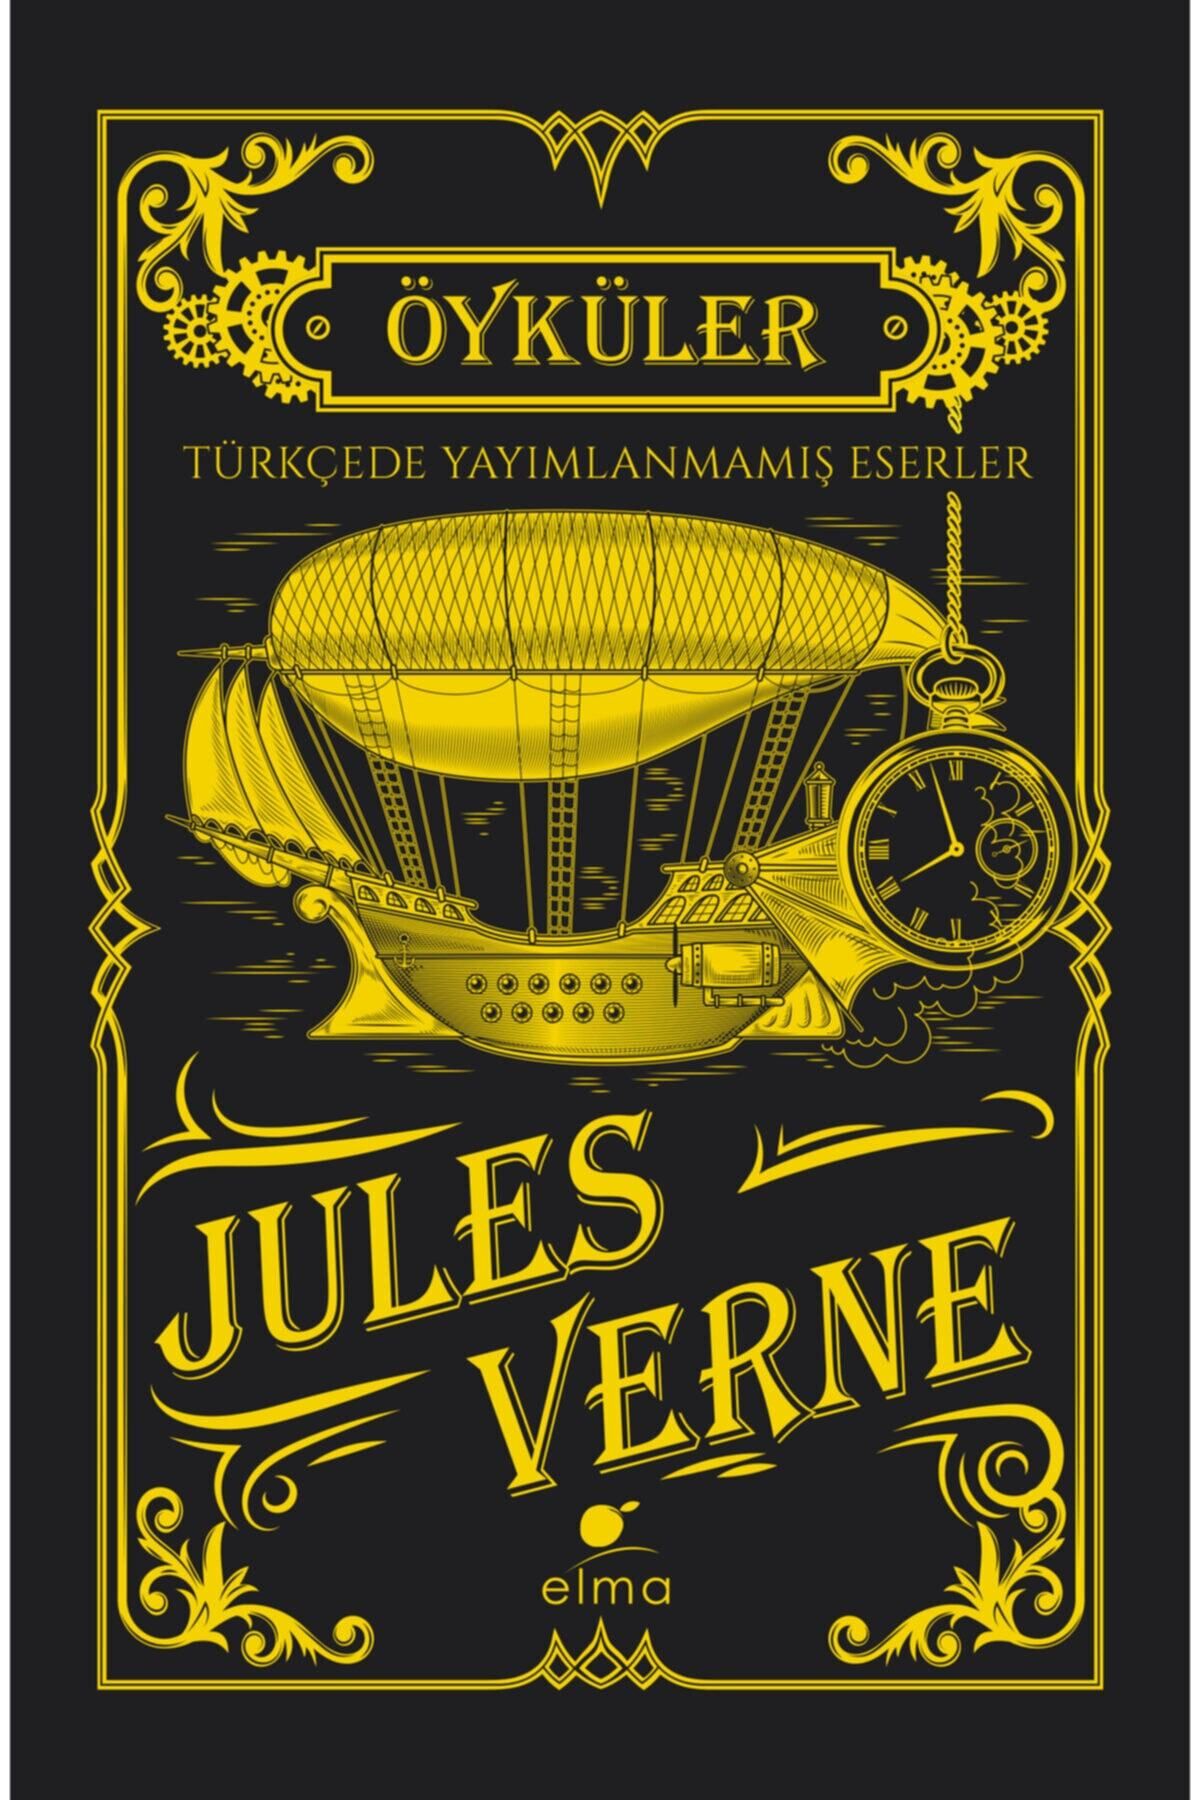 ELMA Yayınevi Jules Verne - Öyküler ( Türkçede Yayımlanmamış Eserler - Ciltli Koleksiyon Baskısı)